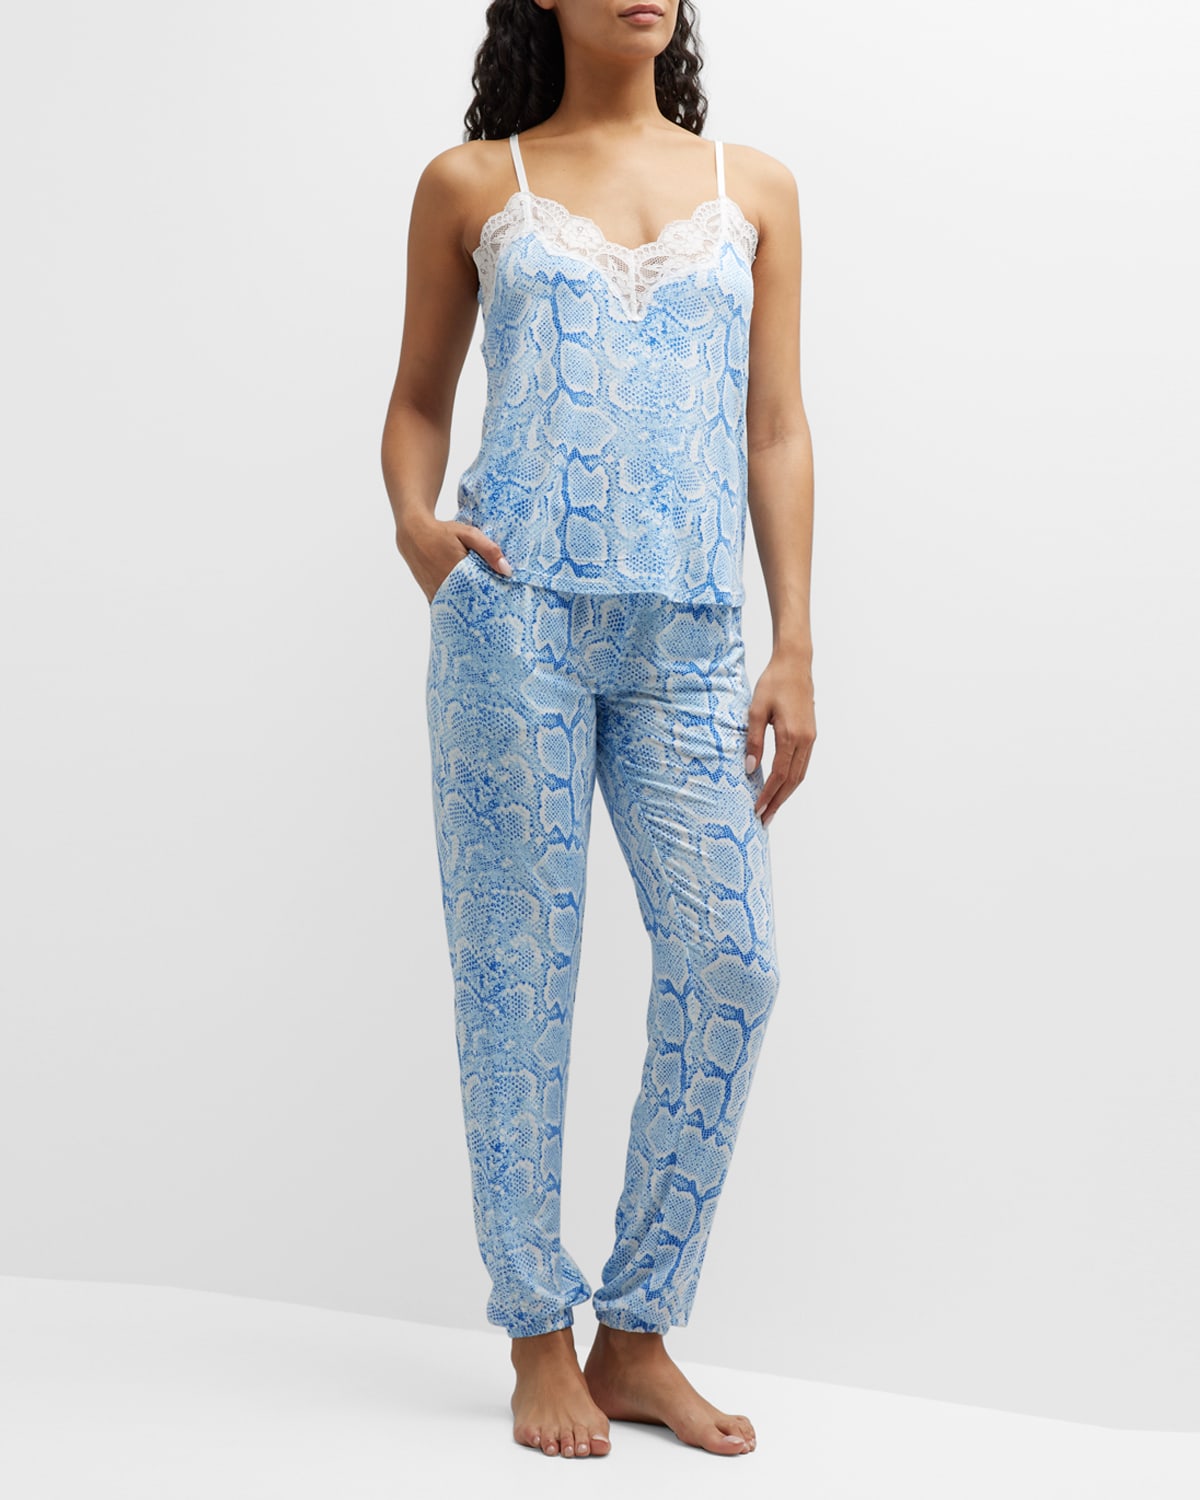 Feelin Snakey Printed Lace-Trim Pajama Set